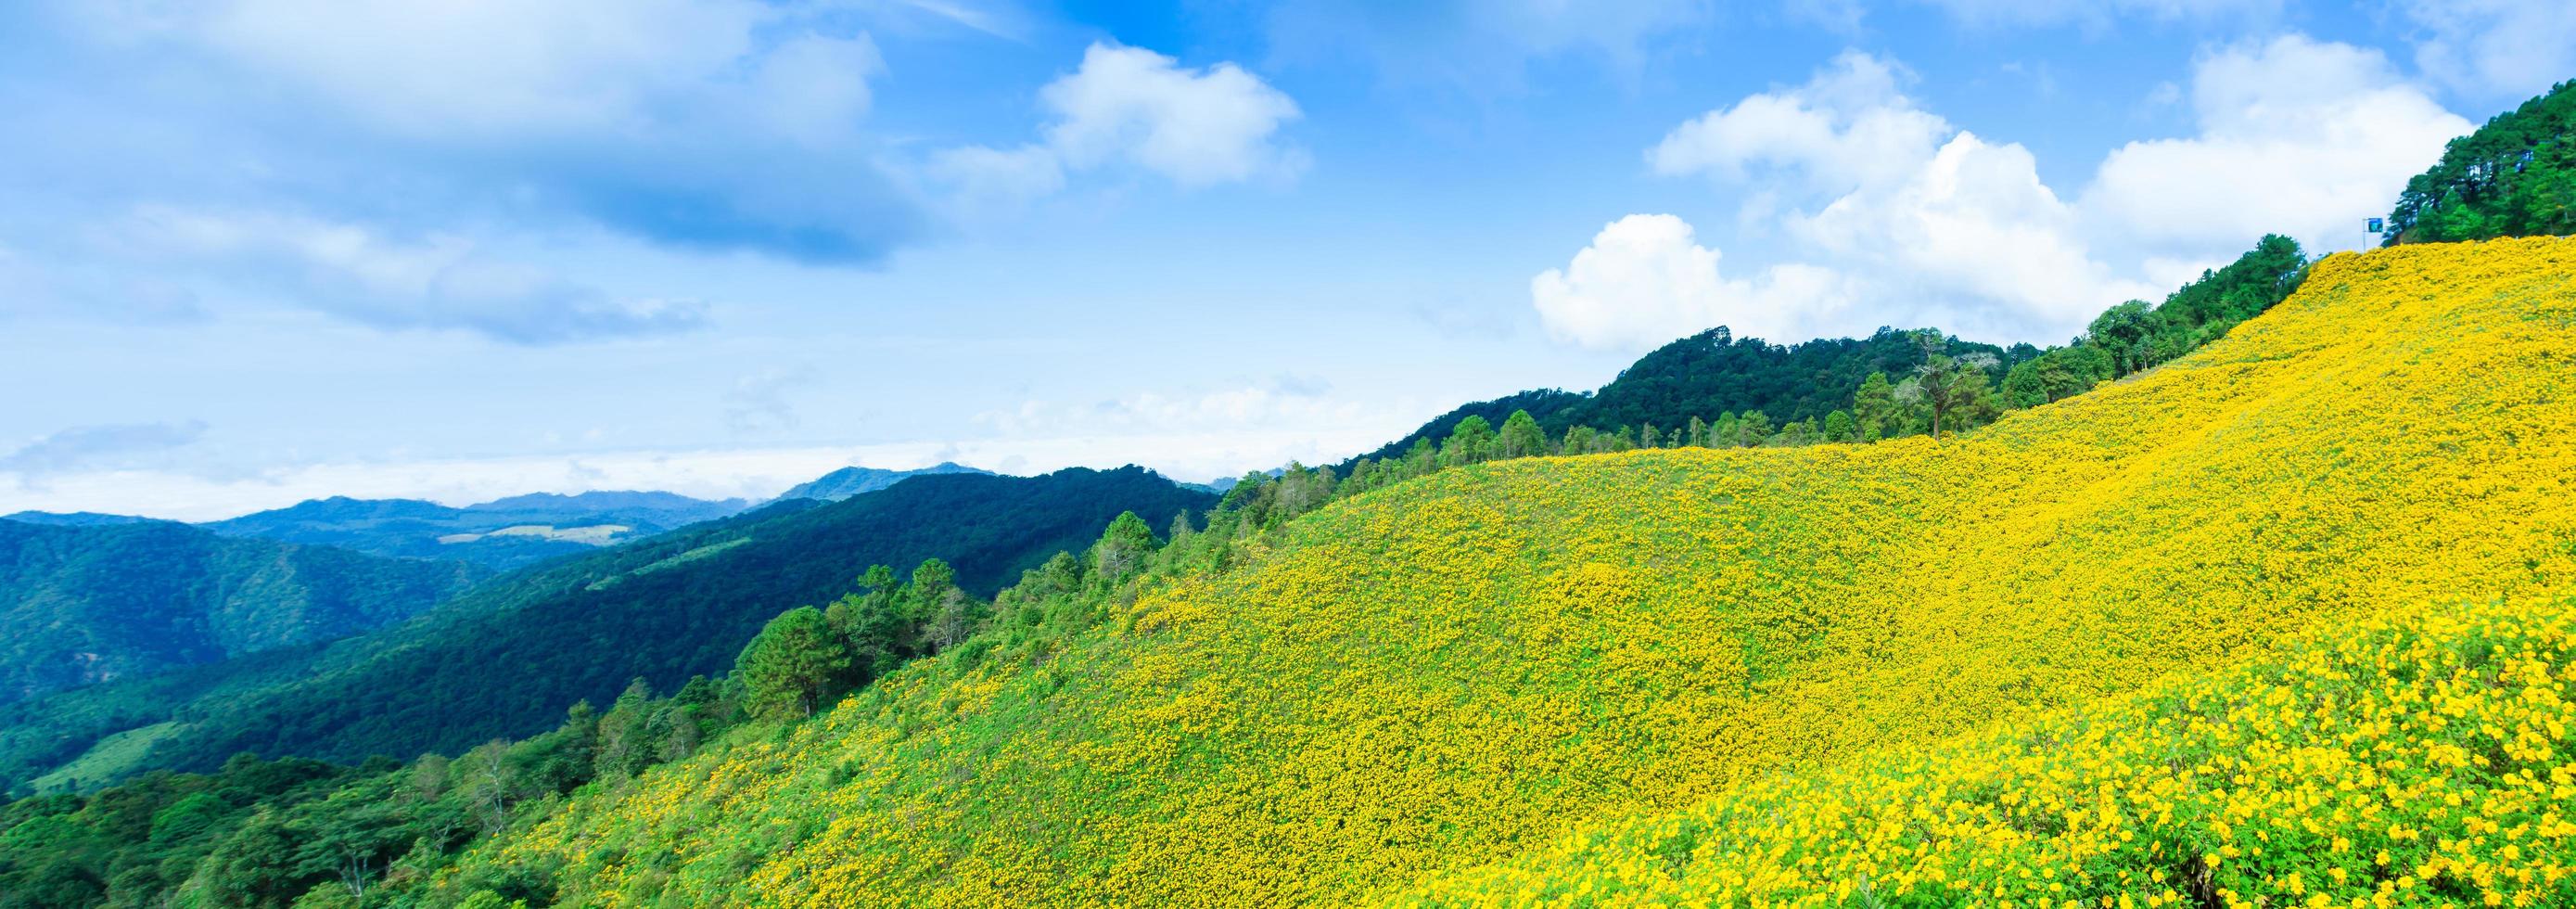 paisaje en tailandia con flores amarillas foto